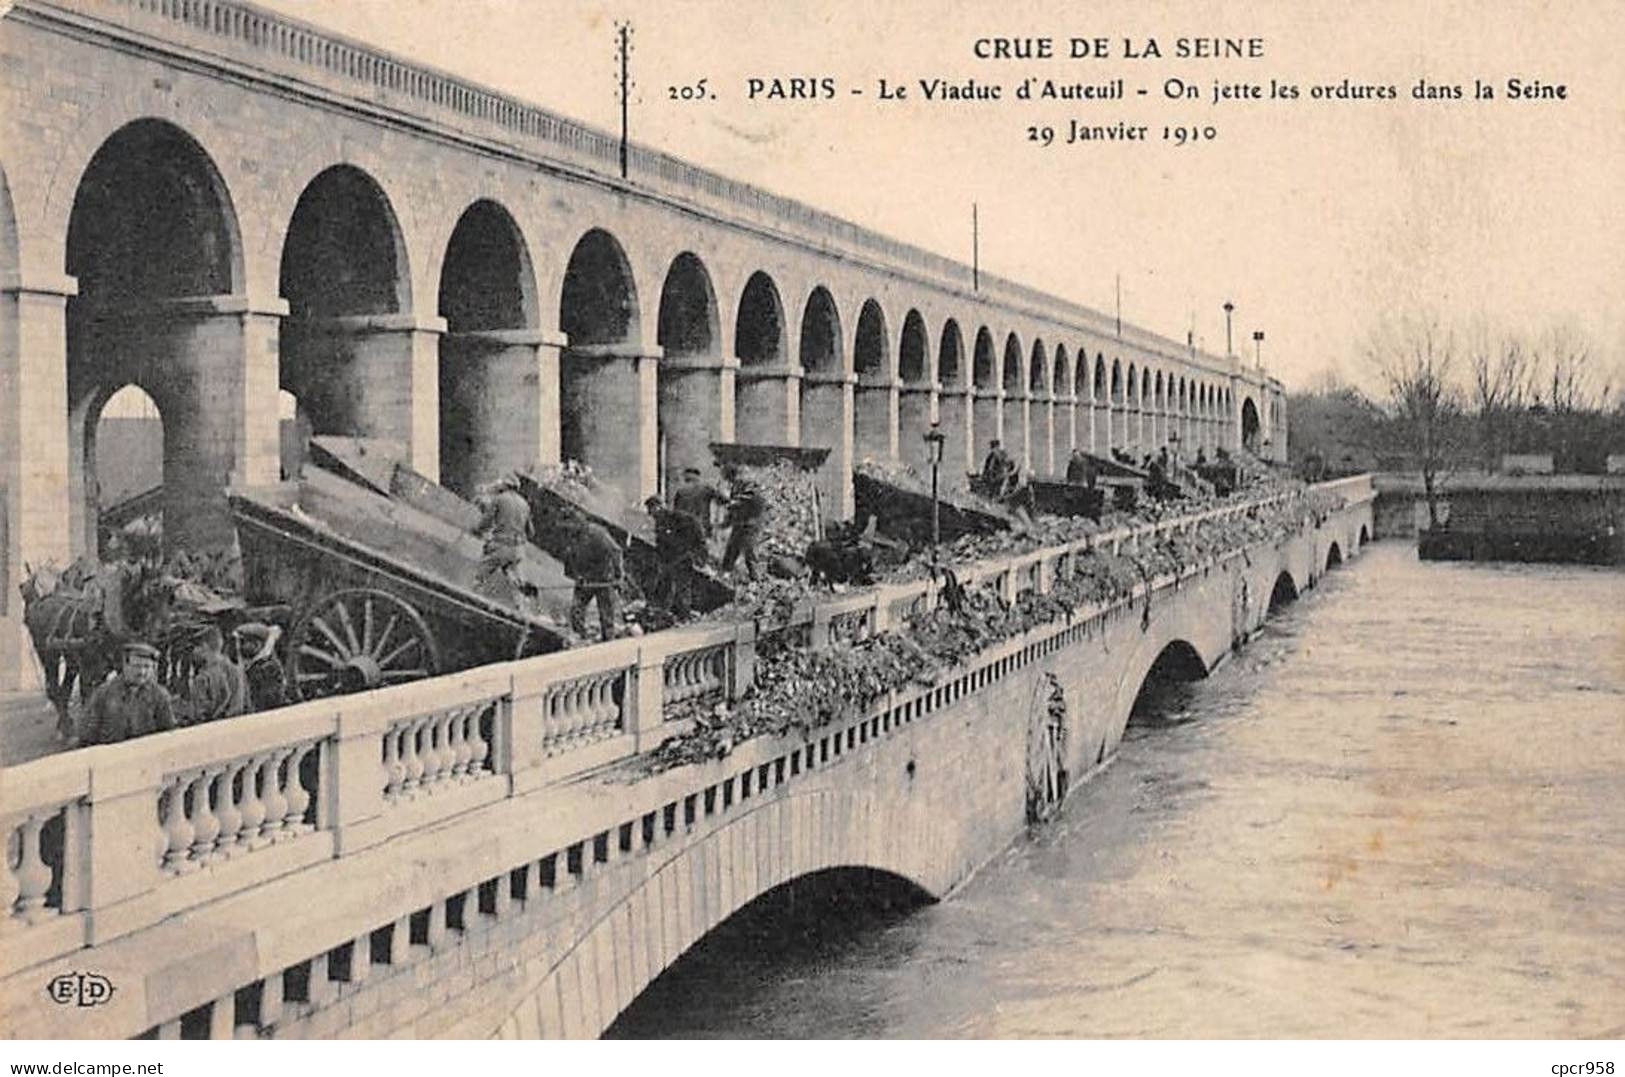 75 - PARIS - SAN55648 - Le Viaduc D'Auteuil - On Jette Les Ordure Dans La Seine - 29 Janvier 1910 - Crue De La Seine - La Crecida Del Sena De 1910